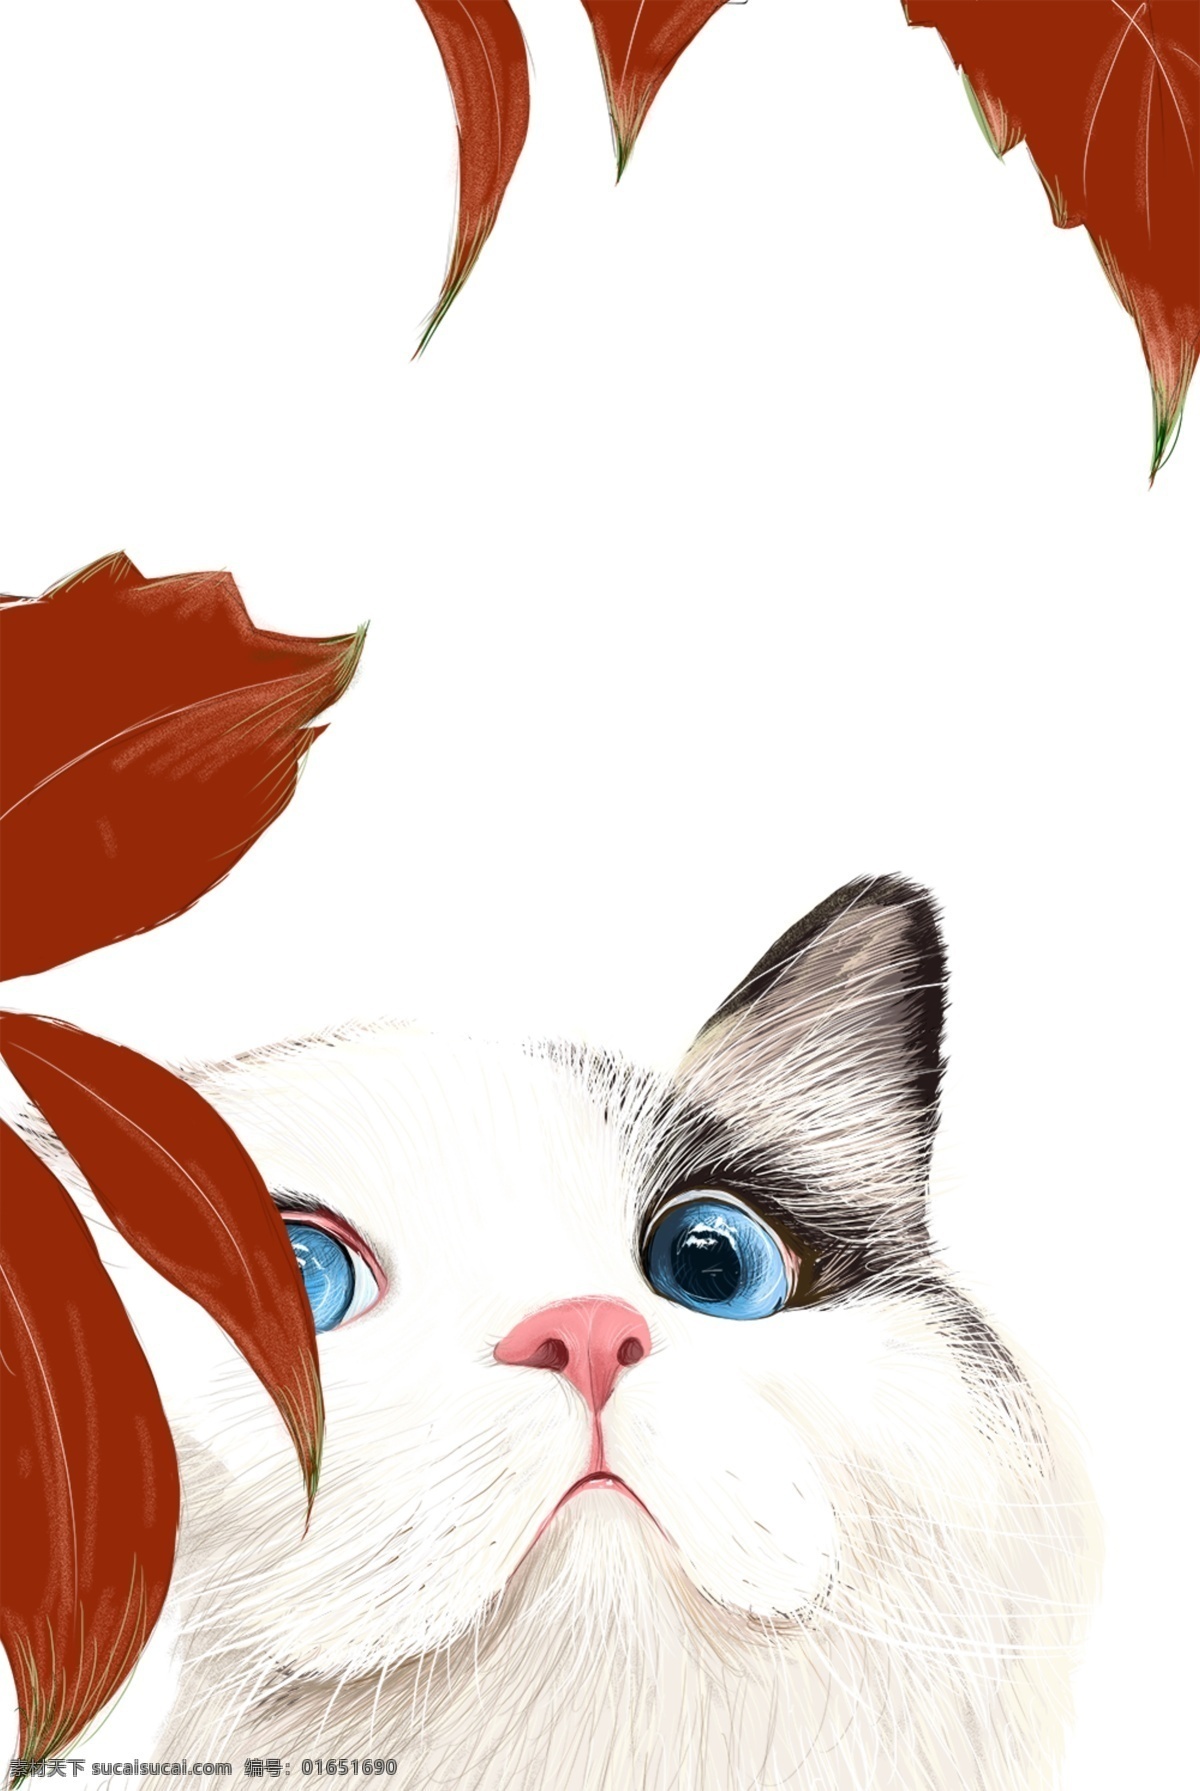 可爱 猫 星 人 主题 边框 卡通 手绘 精美 插画 海报插画 广告插画 小清新 简约风 装饰图案 可爱猫星人